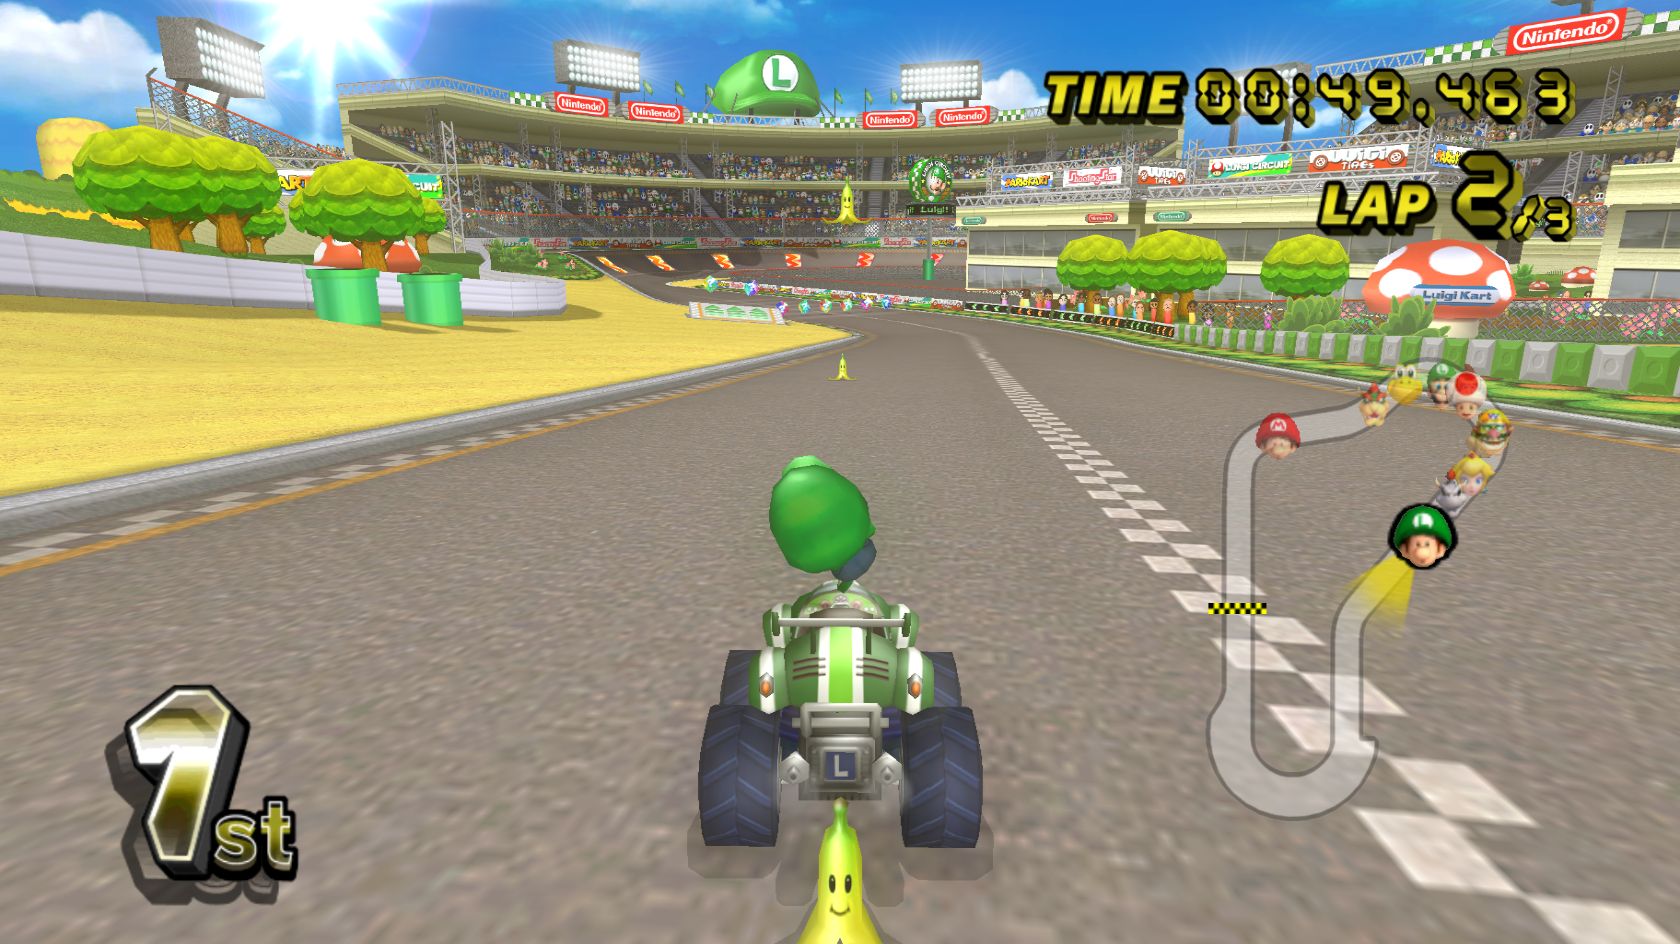 Baixe gratuitamente a imagem Videogame, Mário, Mario Kart Wii na área de trabalho do seu PC